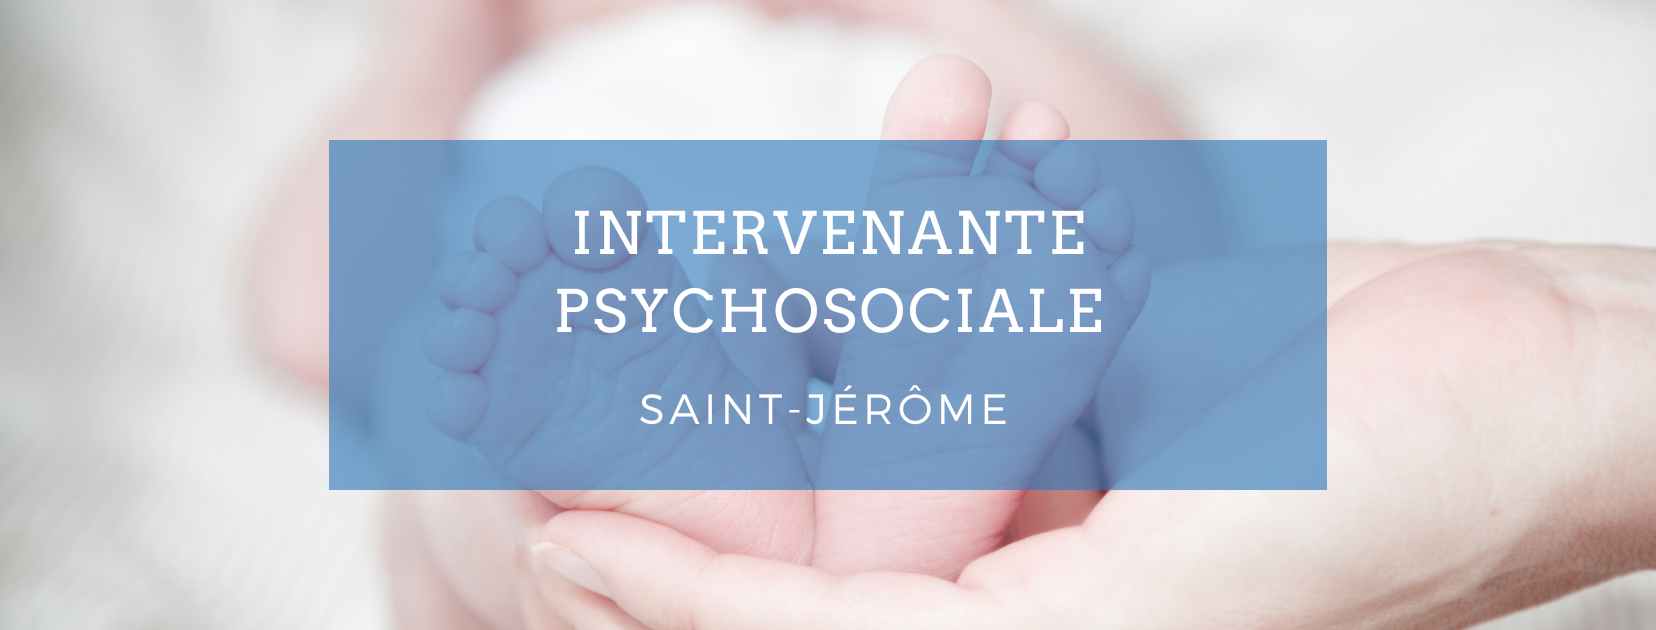 Emploi intervenante psychosociale - Saint-Jérôme